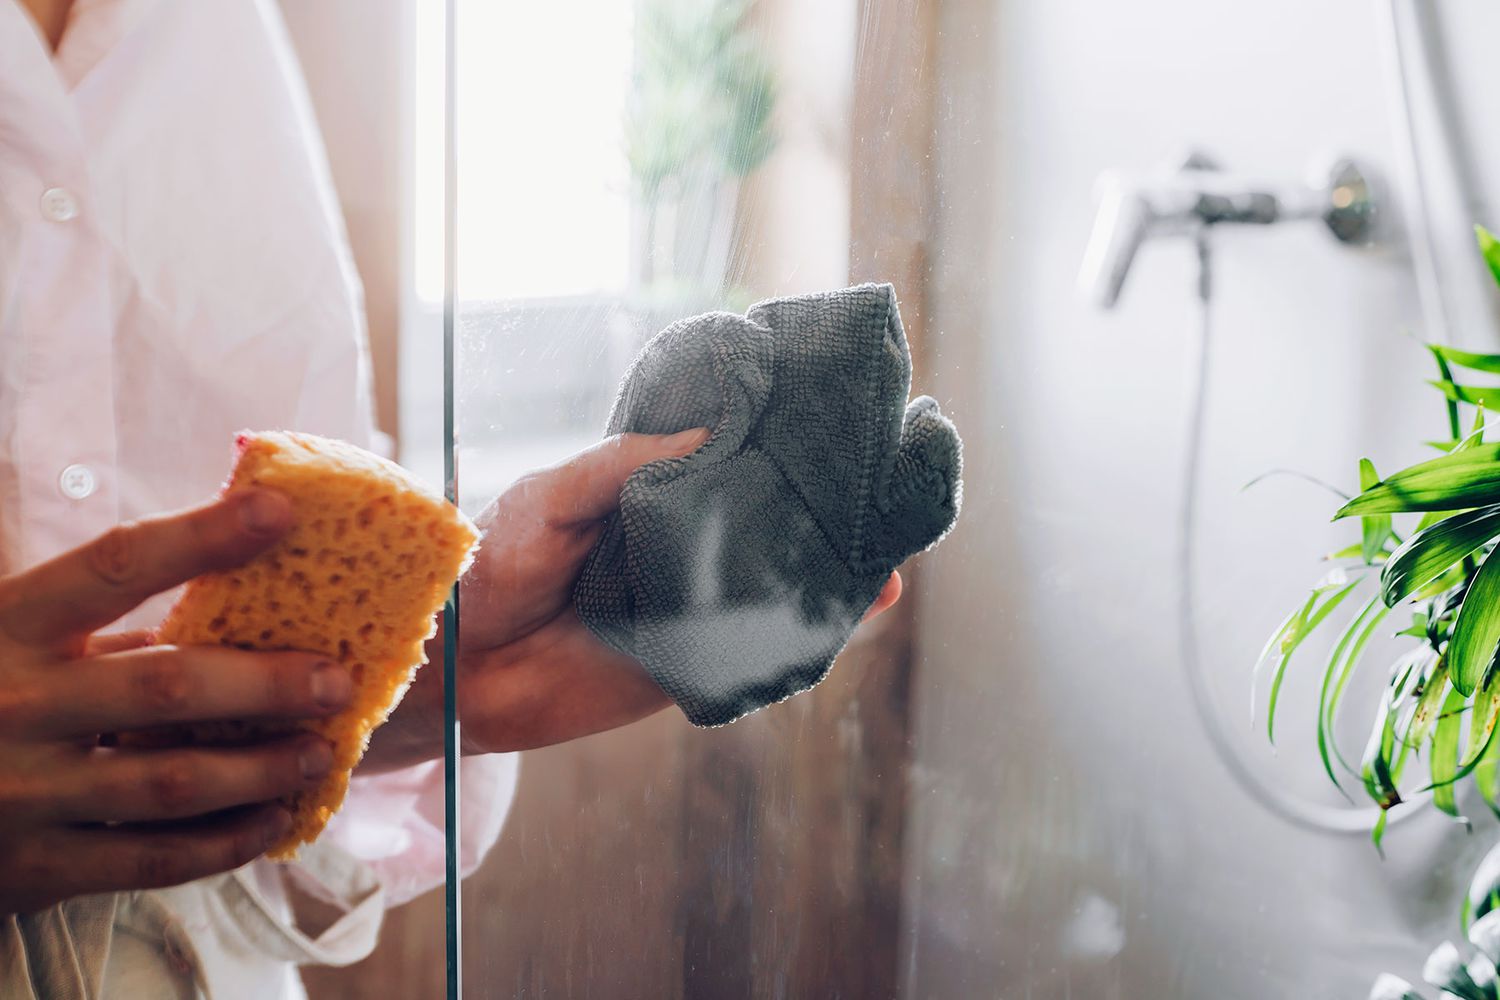 Pano de microfibra cinza secando a porta de vidro do chuveiro após borrifar a solução de amônia e água